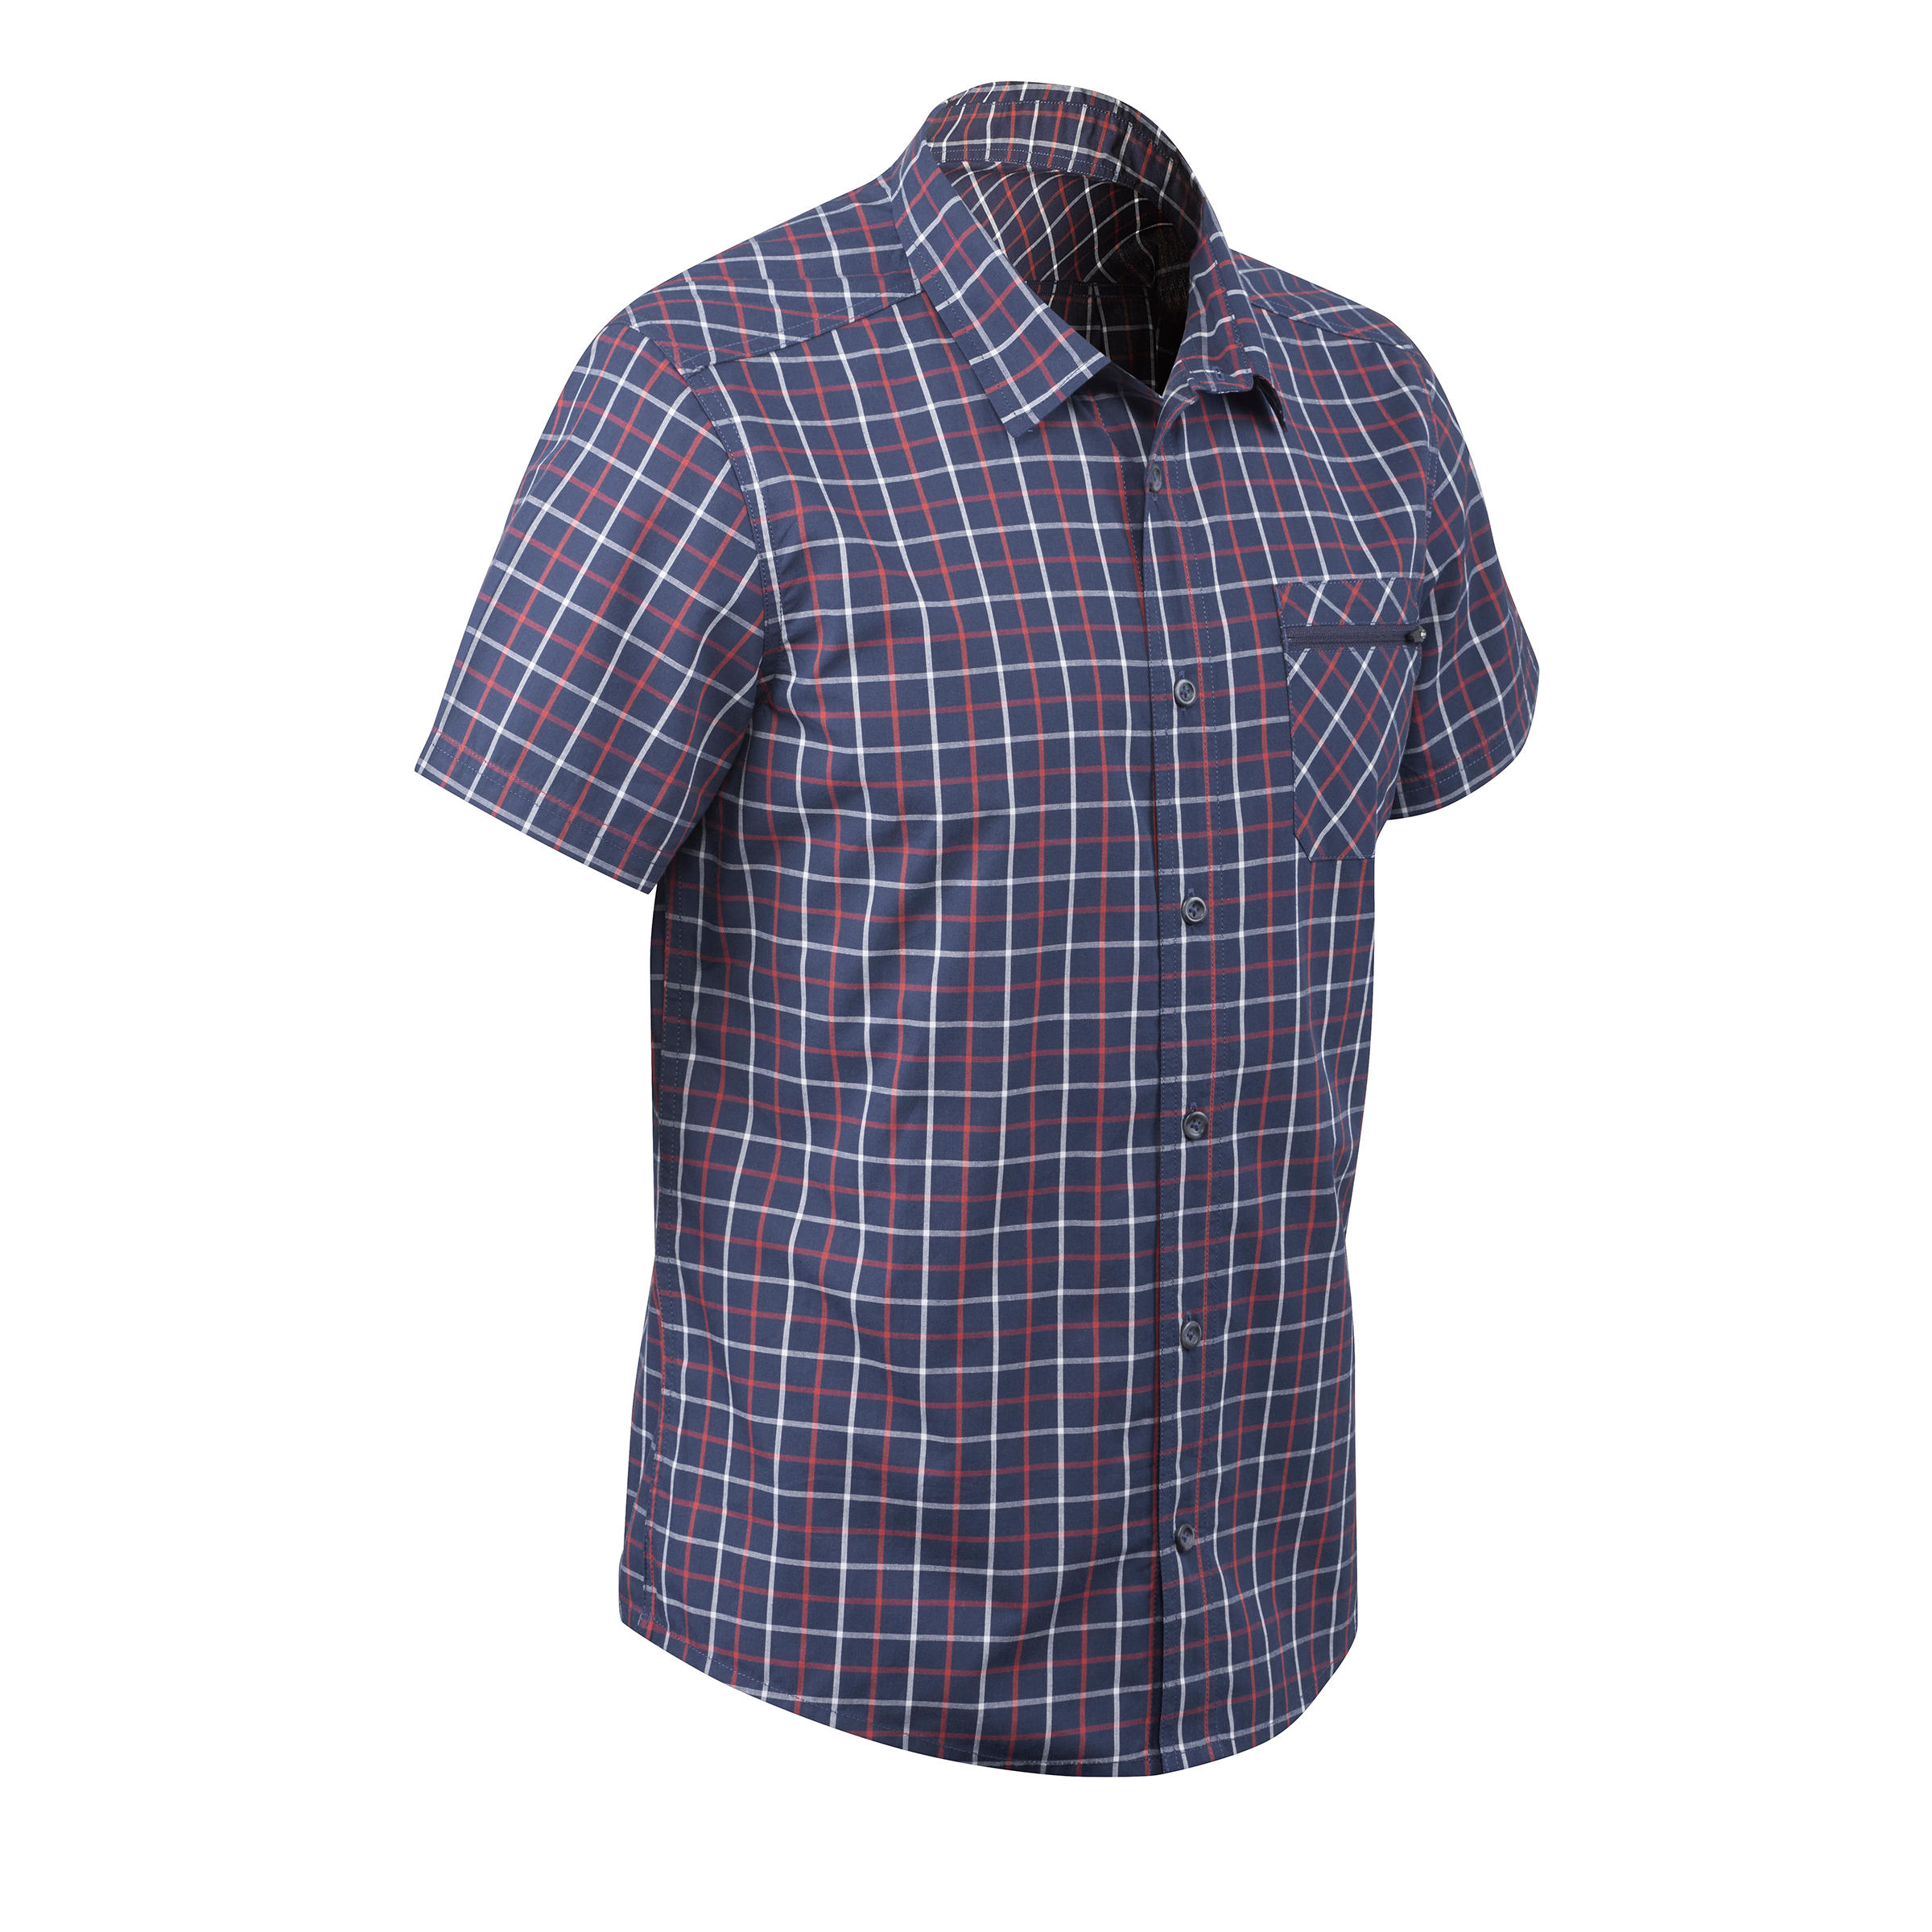 QUECHUA Travel 50 Men's Short-Sleeved Check Shirt - Blue